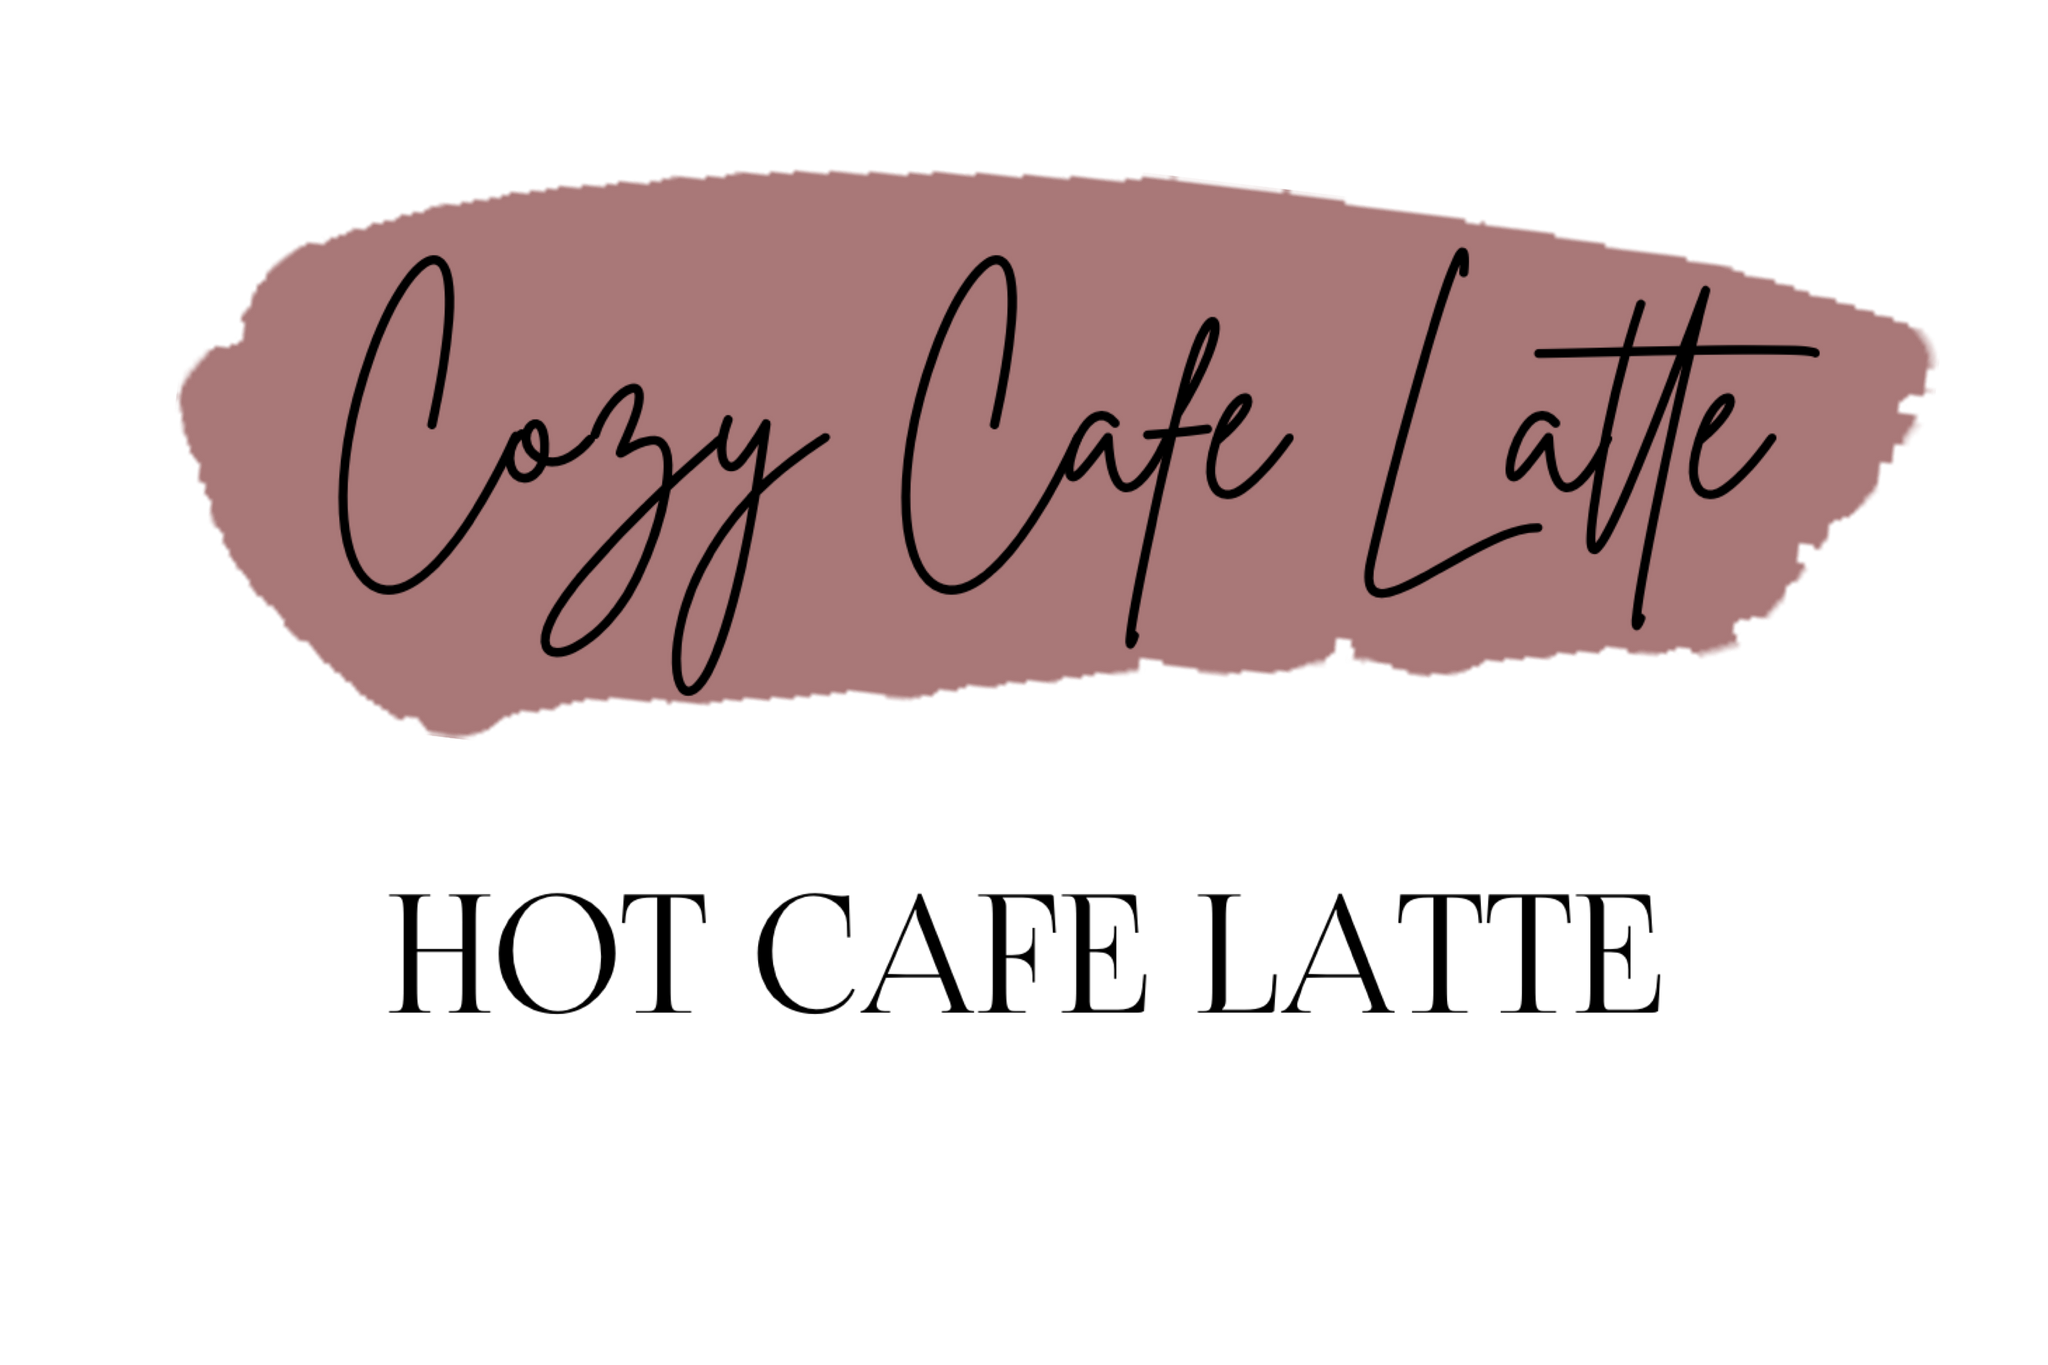 Cozy Cafe Latte